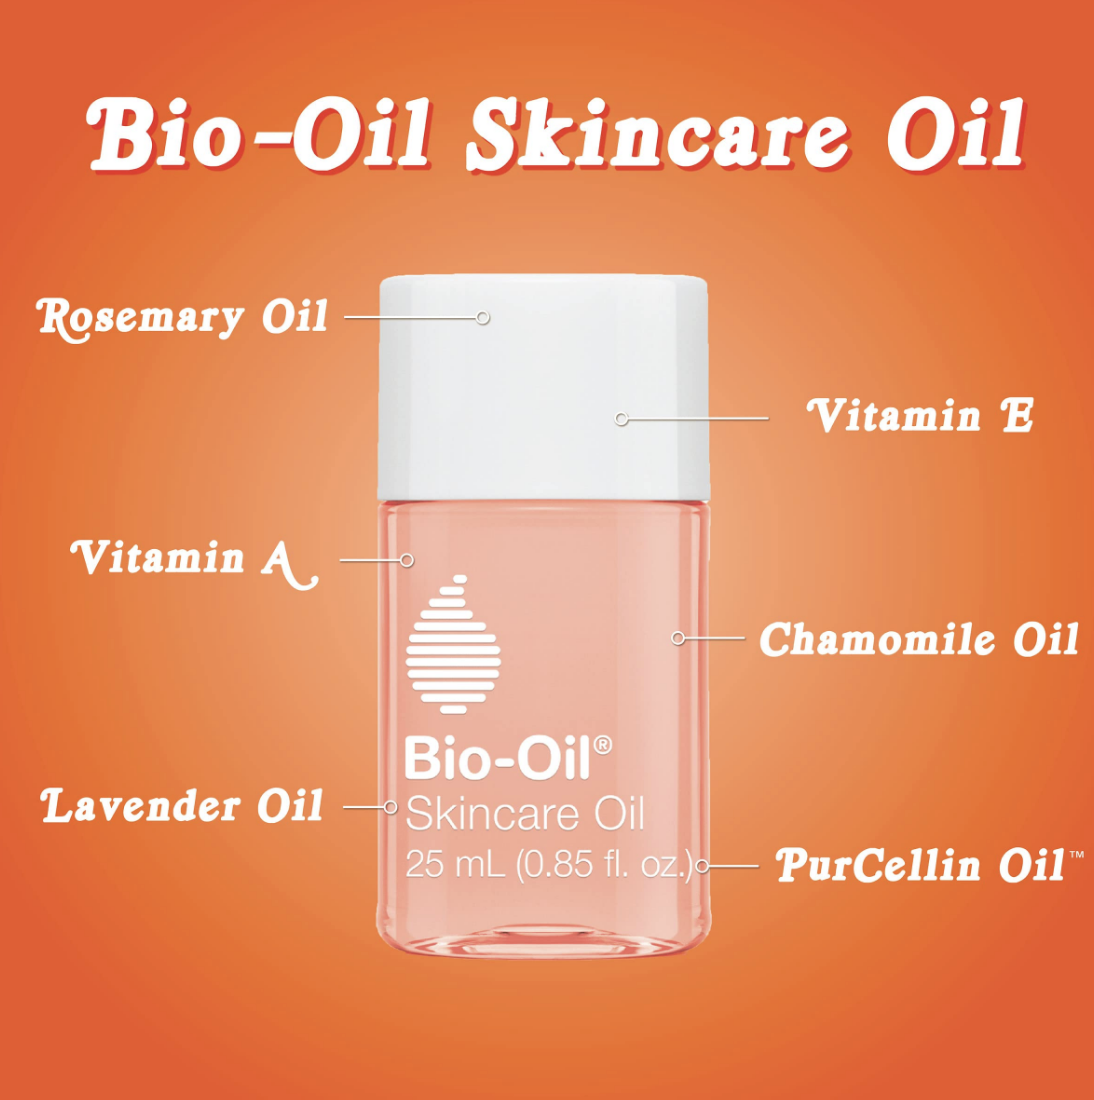 Bioil	Bio-oil Skincare Oil, 25ml